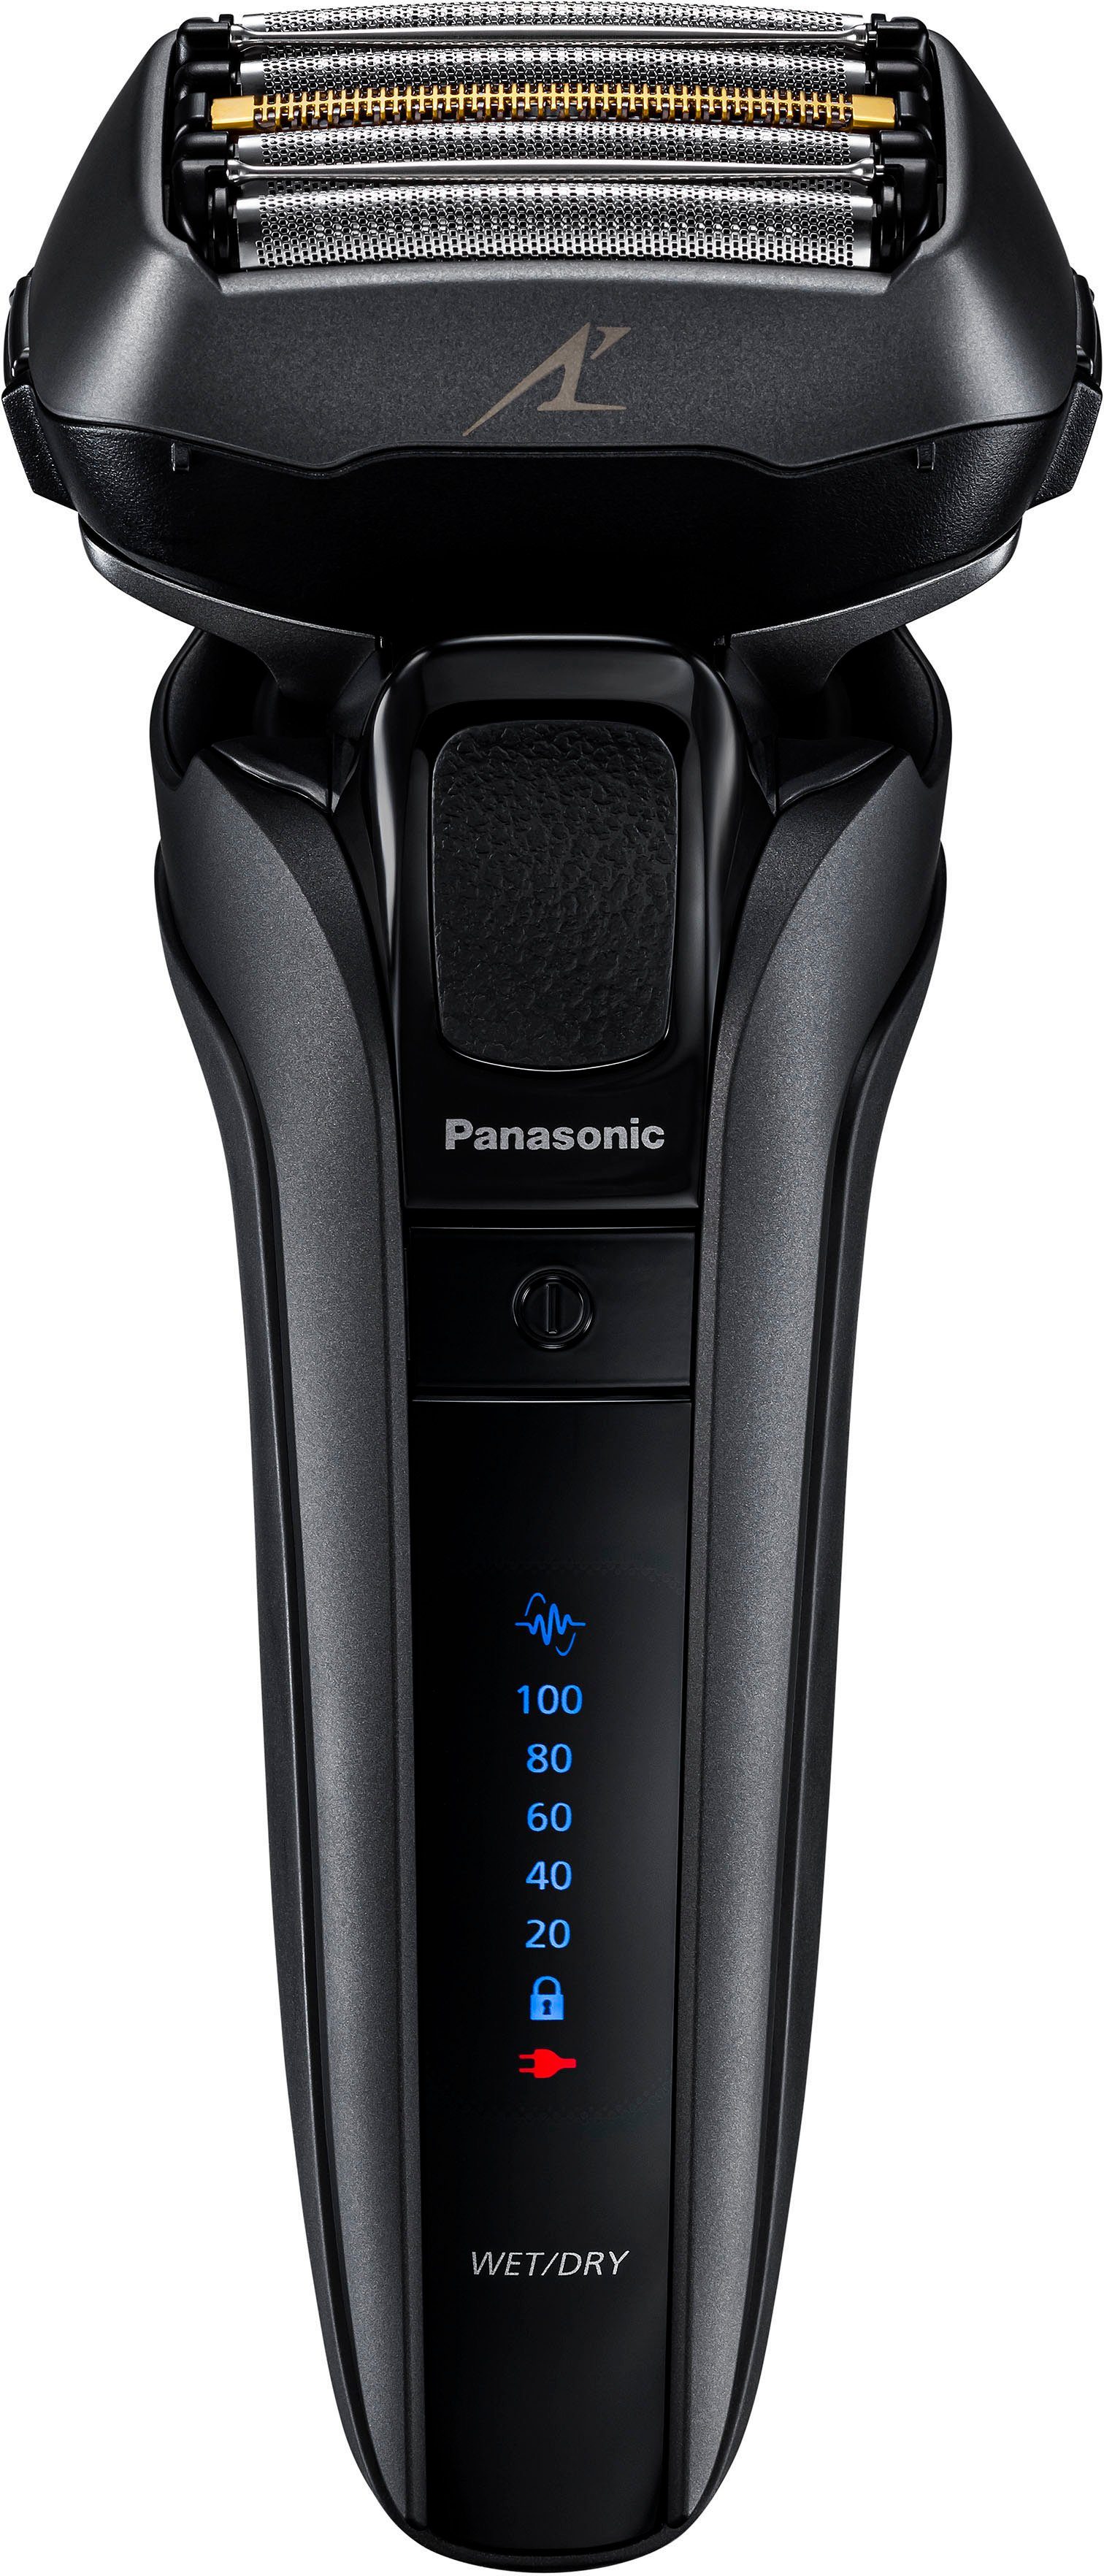 Panasonic Elektrorasierer Series 900 Premium Rasierer ES-LV9U,  Reinigungsstation, Langhaartrimmer